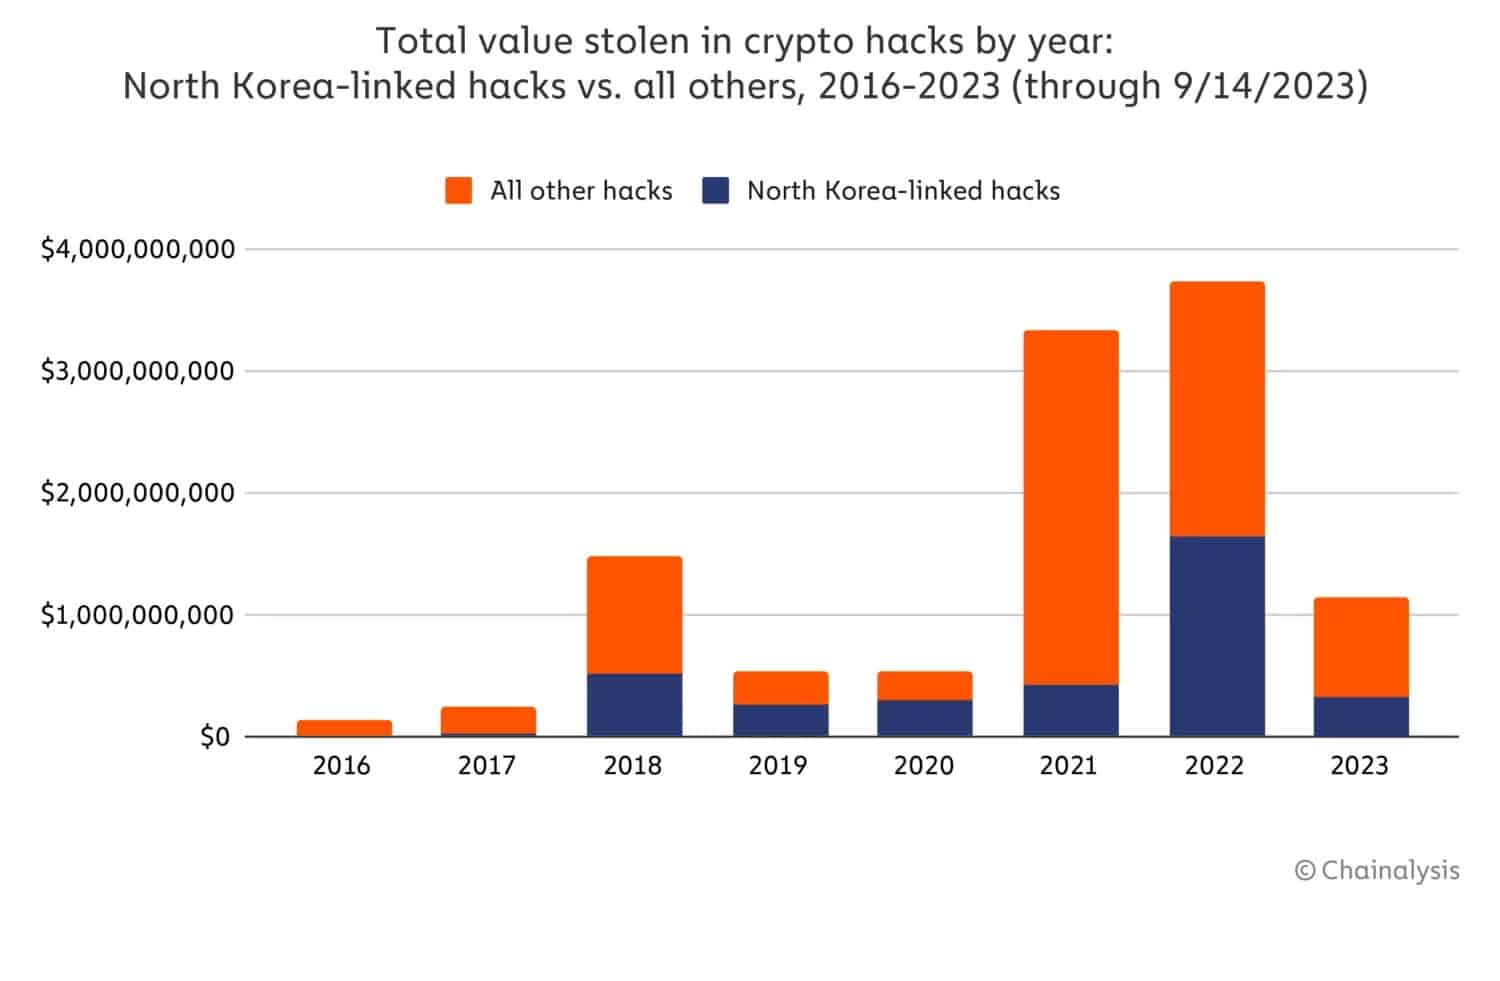 Рисунок 2 - Сравнение всех криптовзломов и взломов Северной Кореи